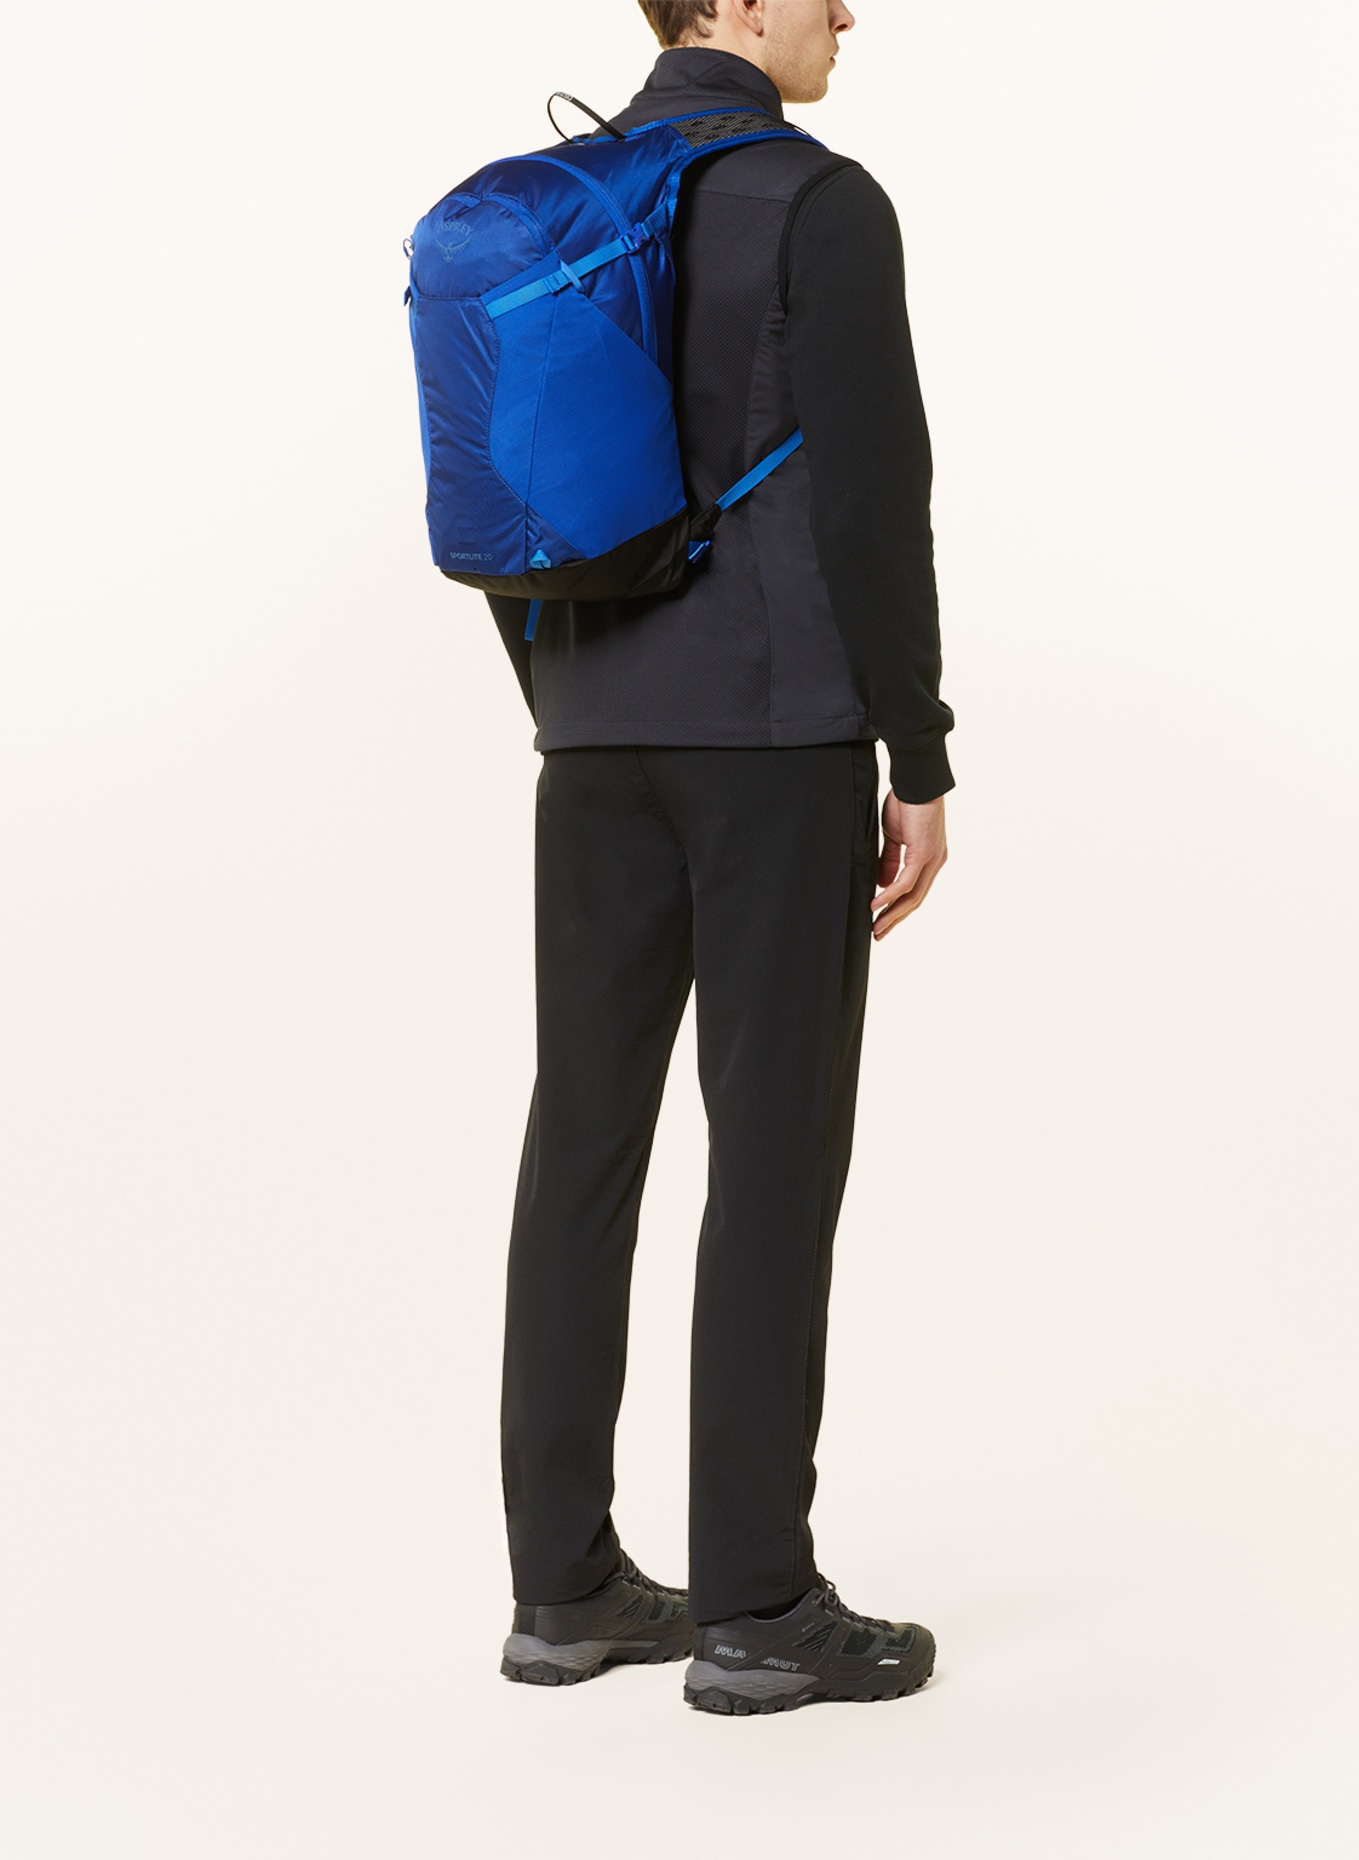 OSPREY Backpack SPORTLITE 20 l, Color: BLUE (Image 4)